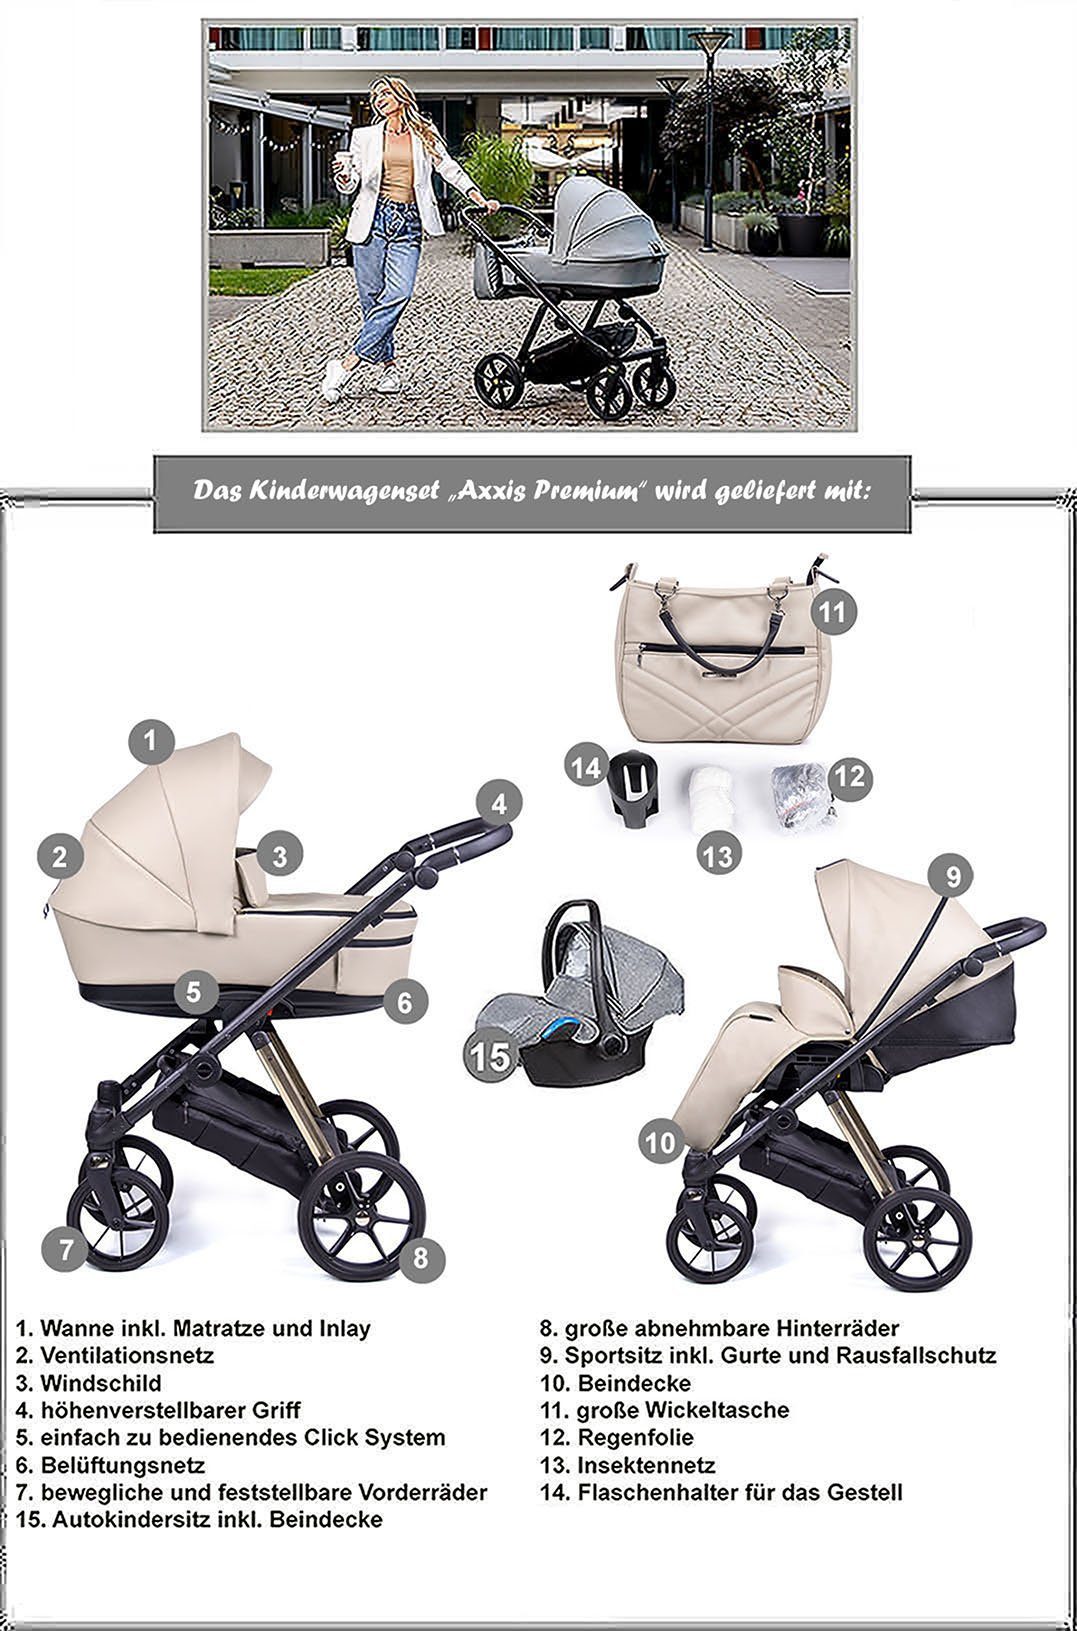 Braun babies-on-wheels in Axxis - Kombi-Kinderwagen 15 Designs Teile Kinderwagen-Set = 3 12 in Premium - schwarz Gestell 1